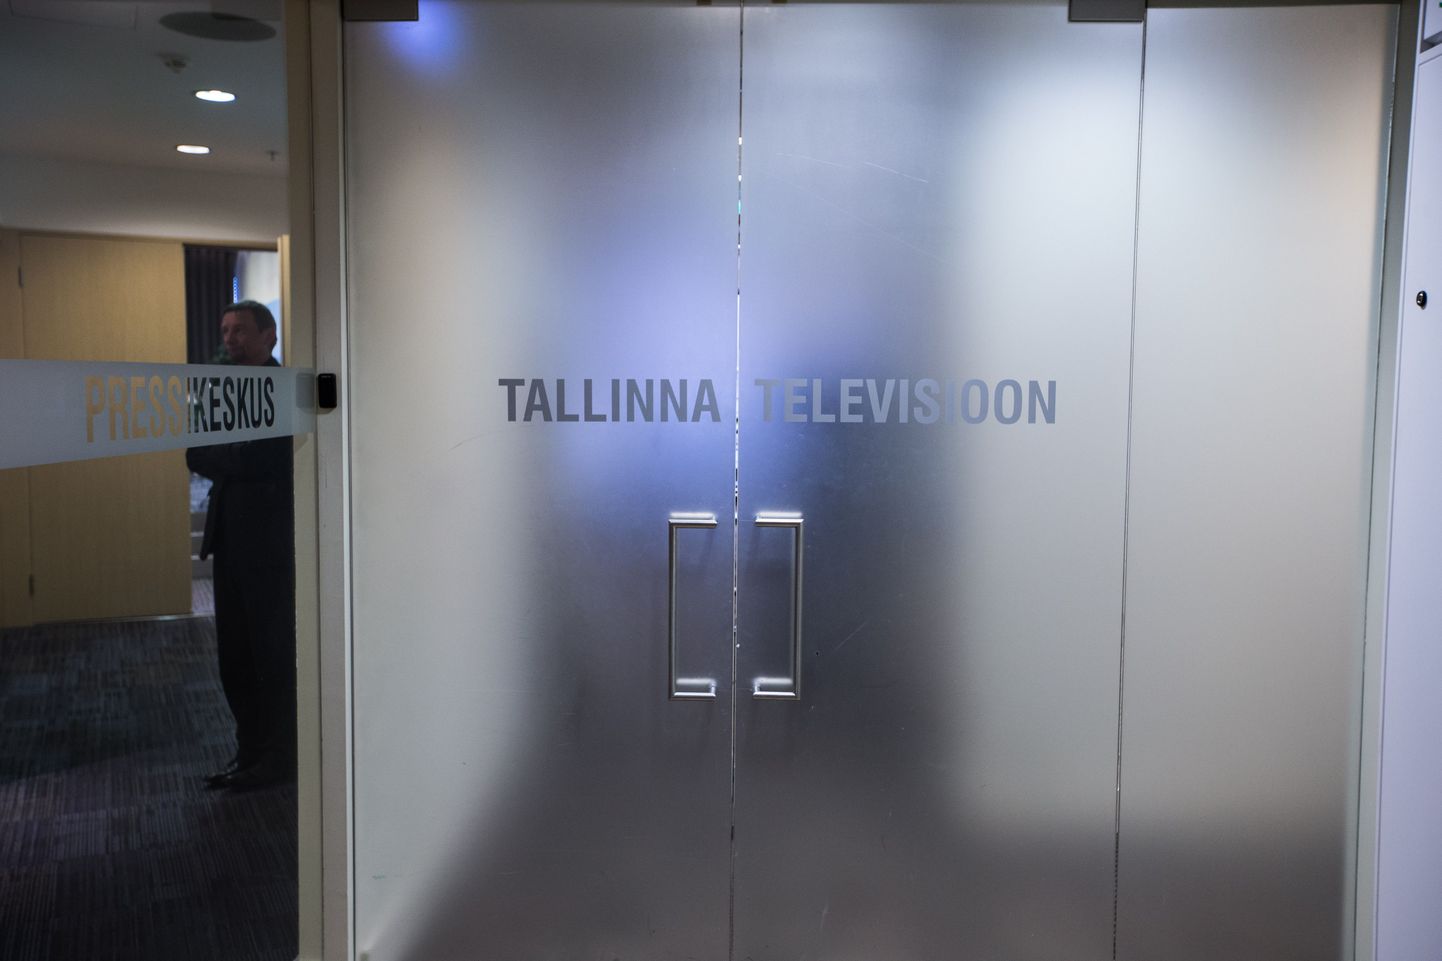 Tallinna TV.